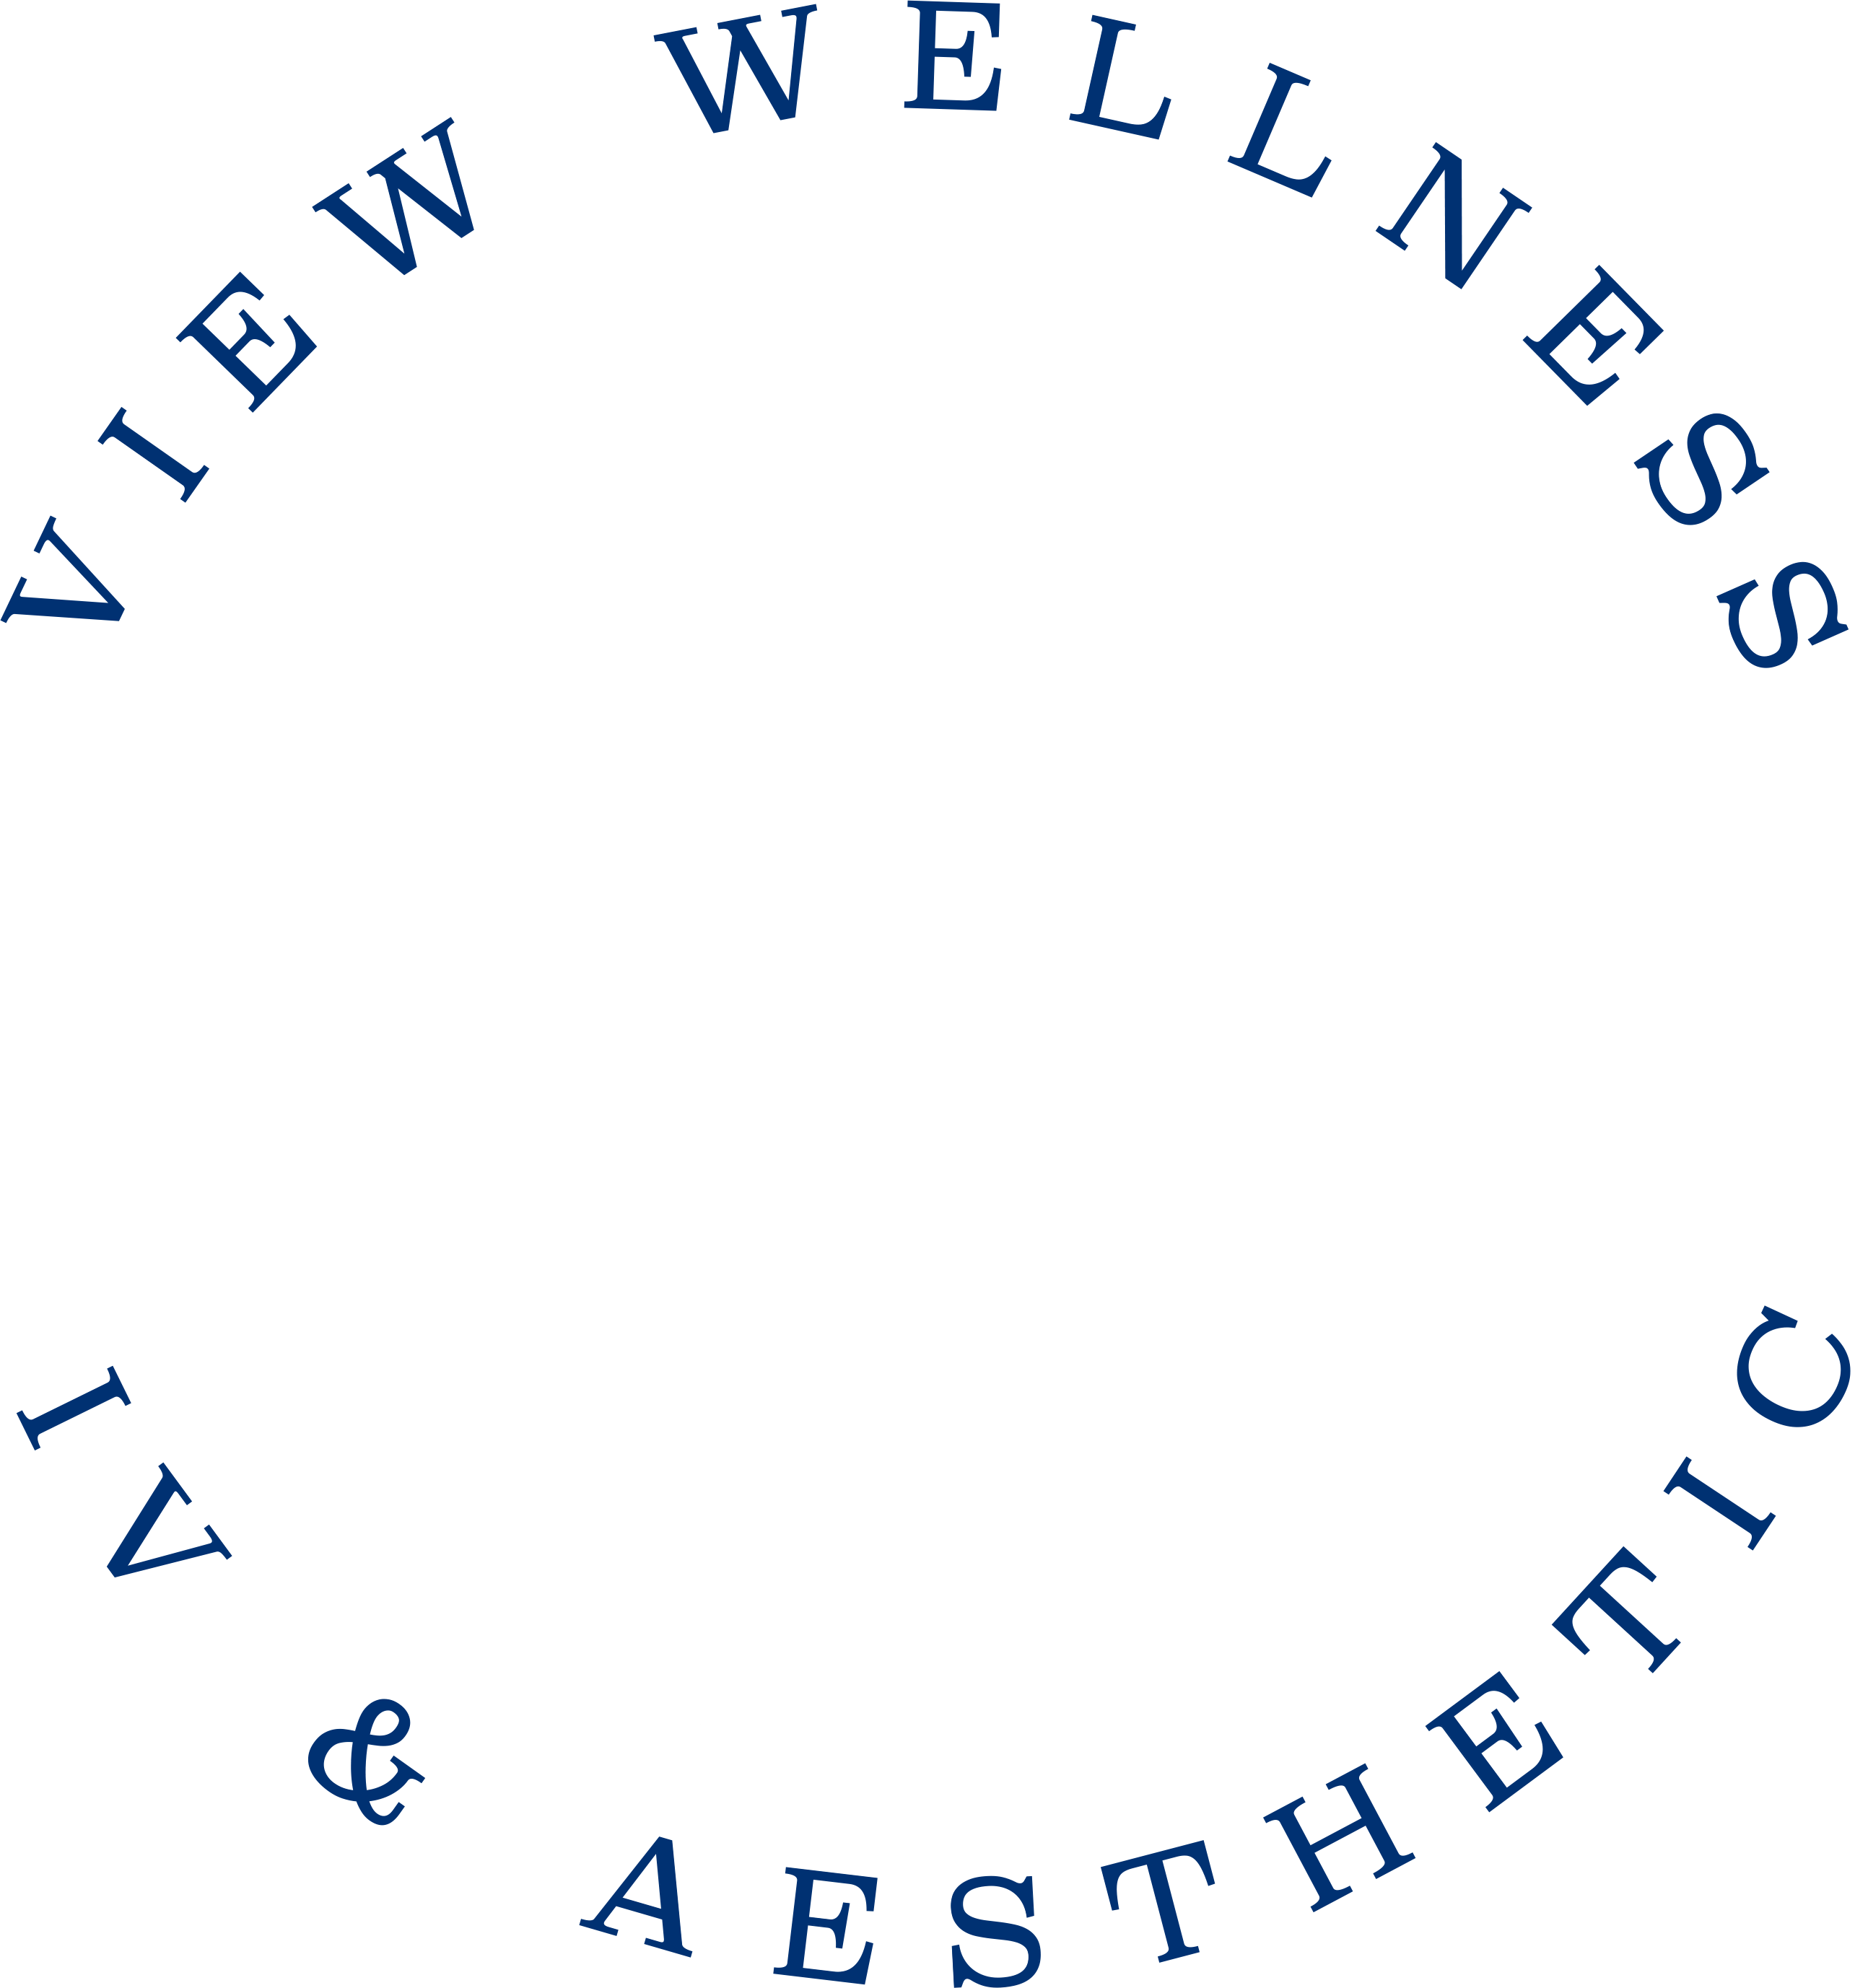 View Wellness Stamp Blue Circular Text